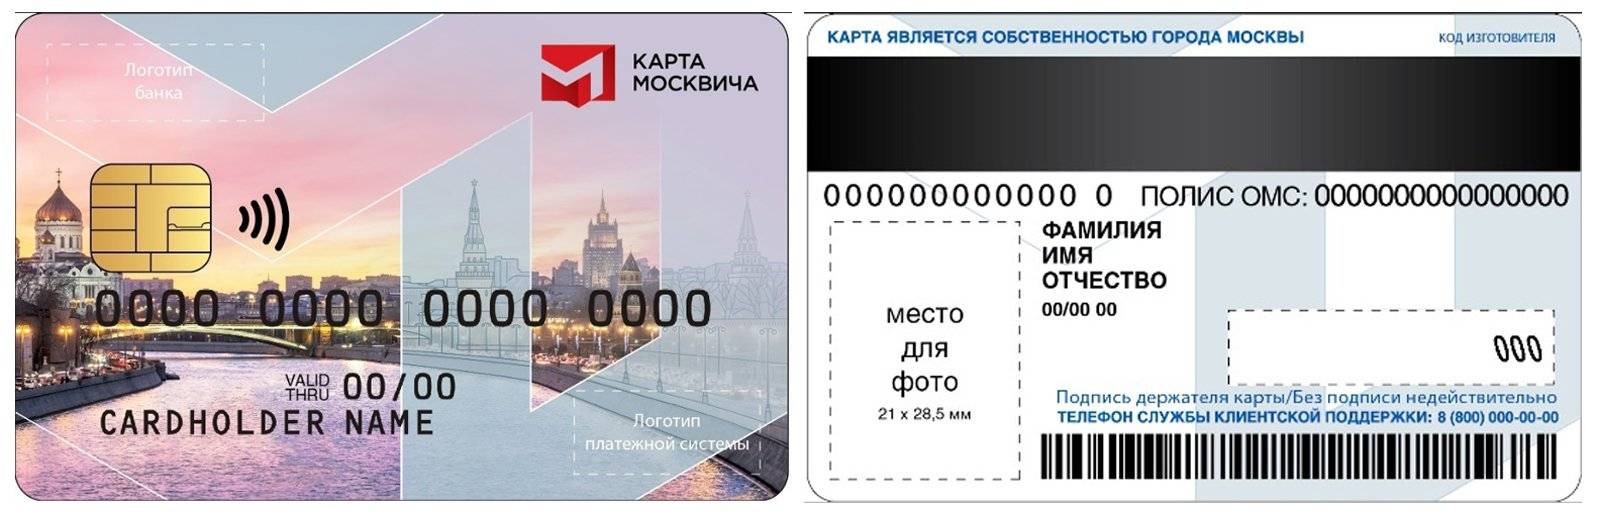 Социальная карта москвича истек срок действия где менять